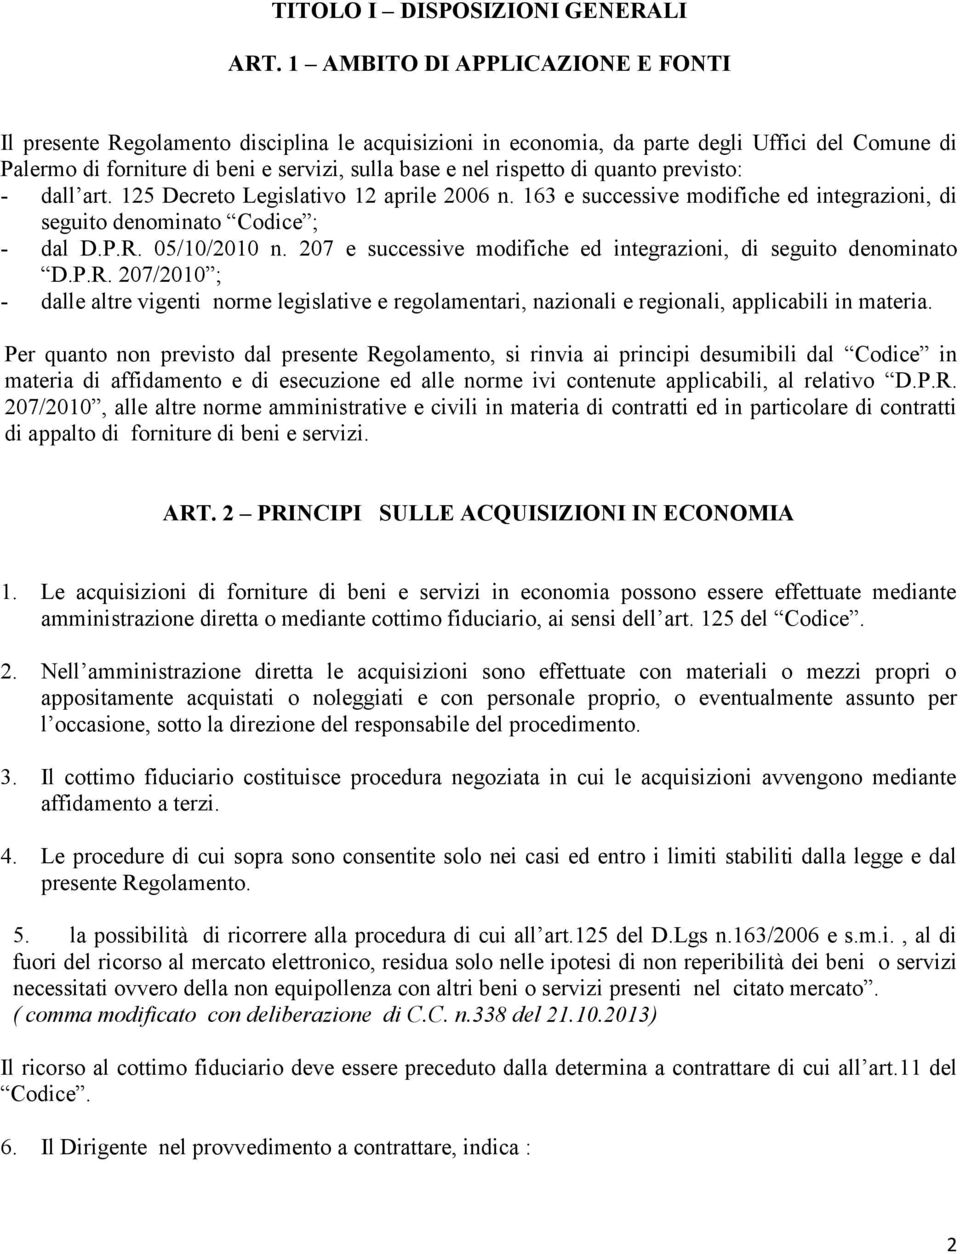 di quanto previsto: - dall art. 125 Decreto Legislativo 12 aprile 2006 n. 163 e successive modifiche ed integrazioni, di seguito denominato Codice ; - dal D.P.R. 05/10/2010 n.